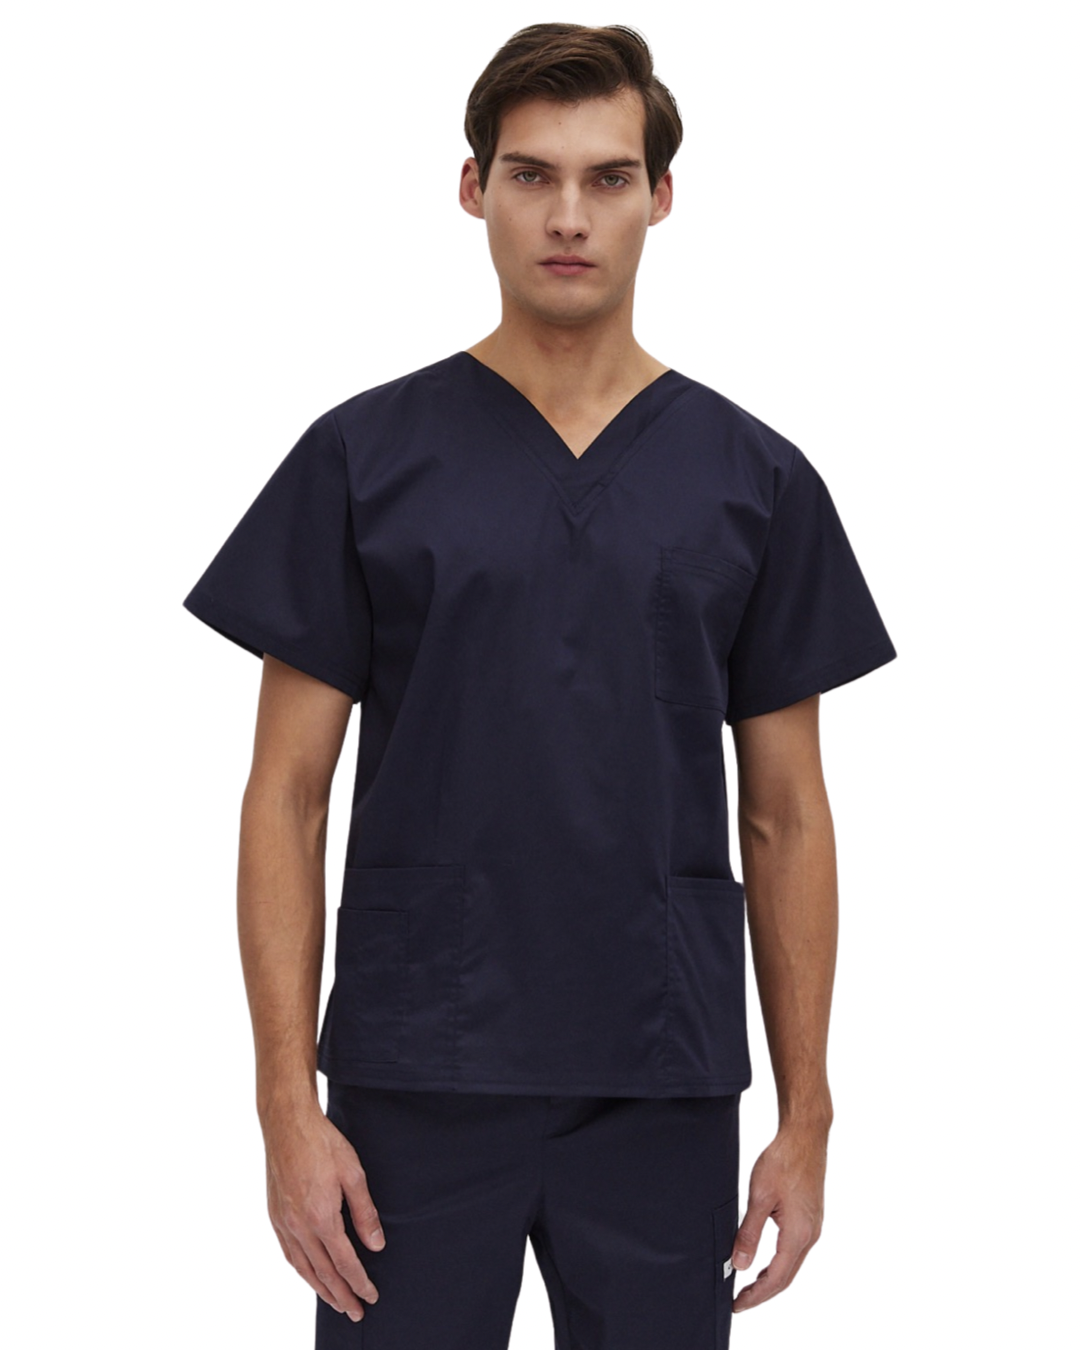 Хирургическая рубашка мужская 4DOCTORS